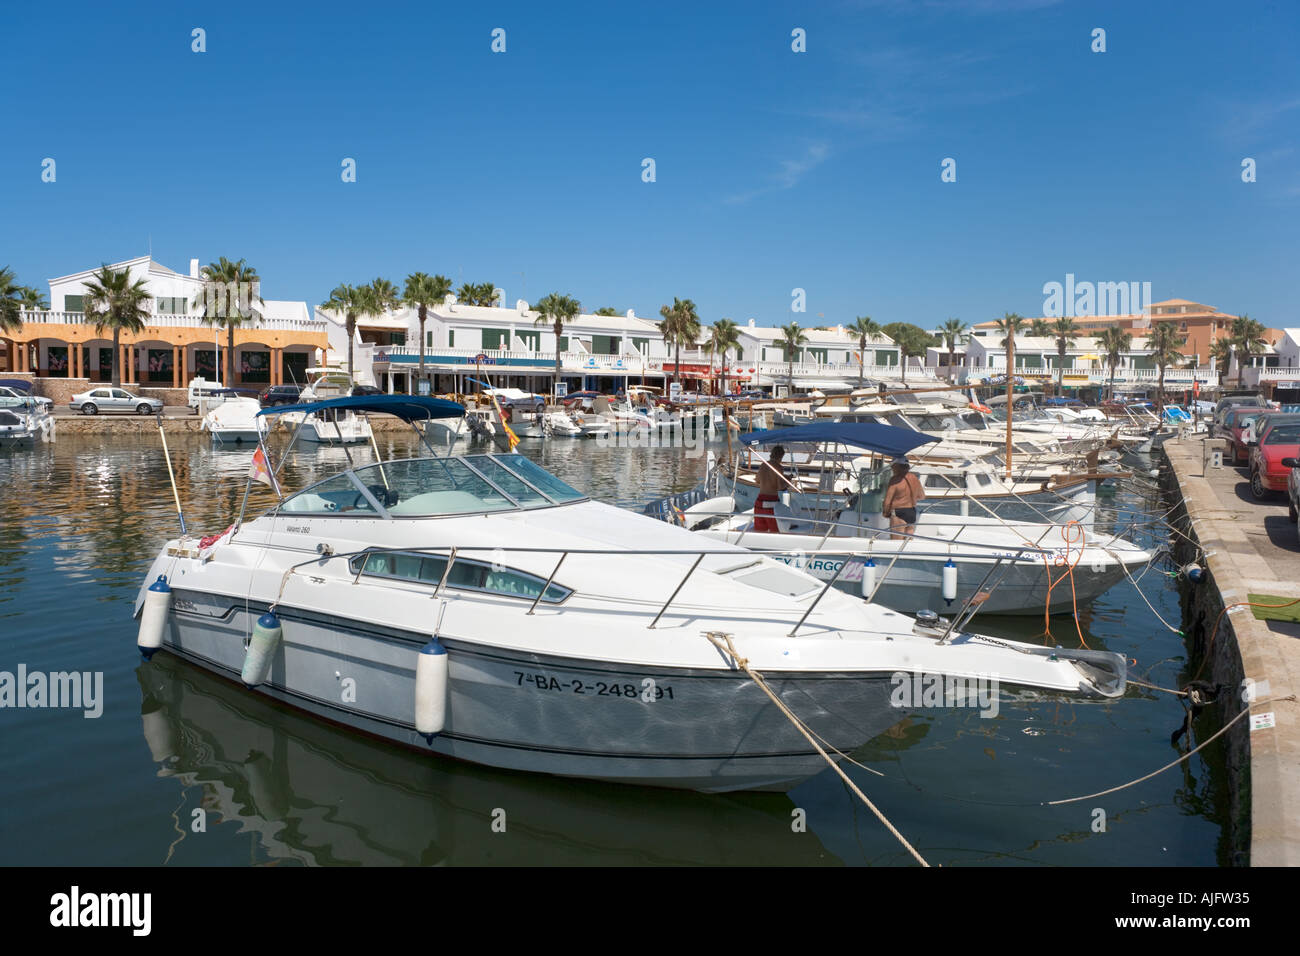 Les bateaux de plaisance dans le port de Cala'n Bosch, Minorque, Iles Baléares, Espagne Banque D'Images